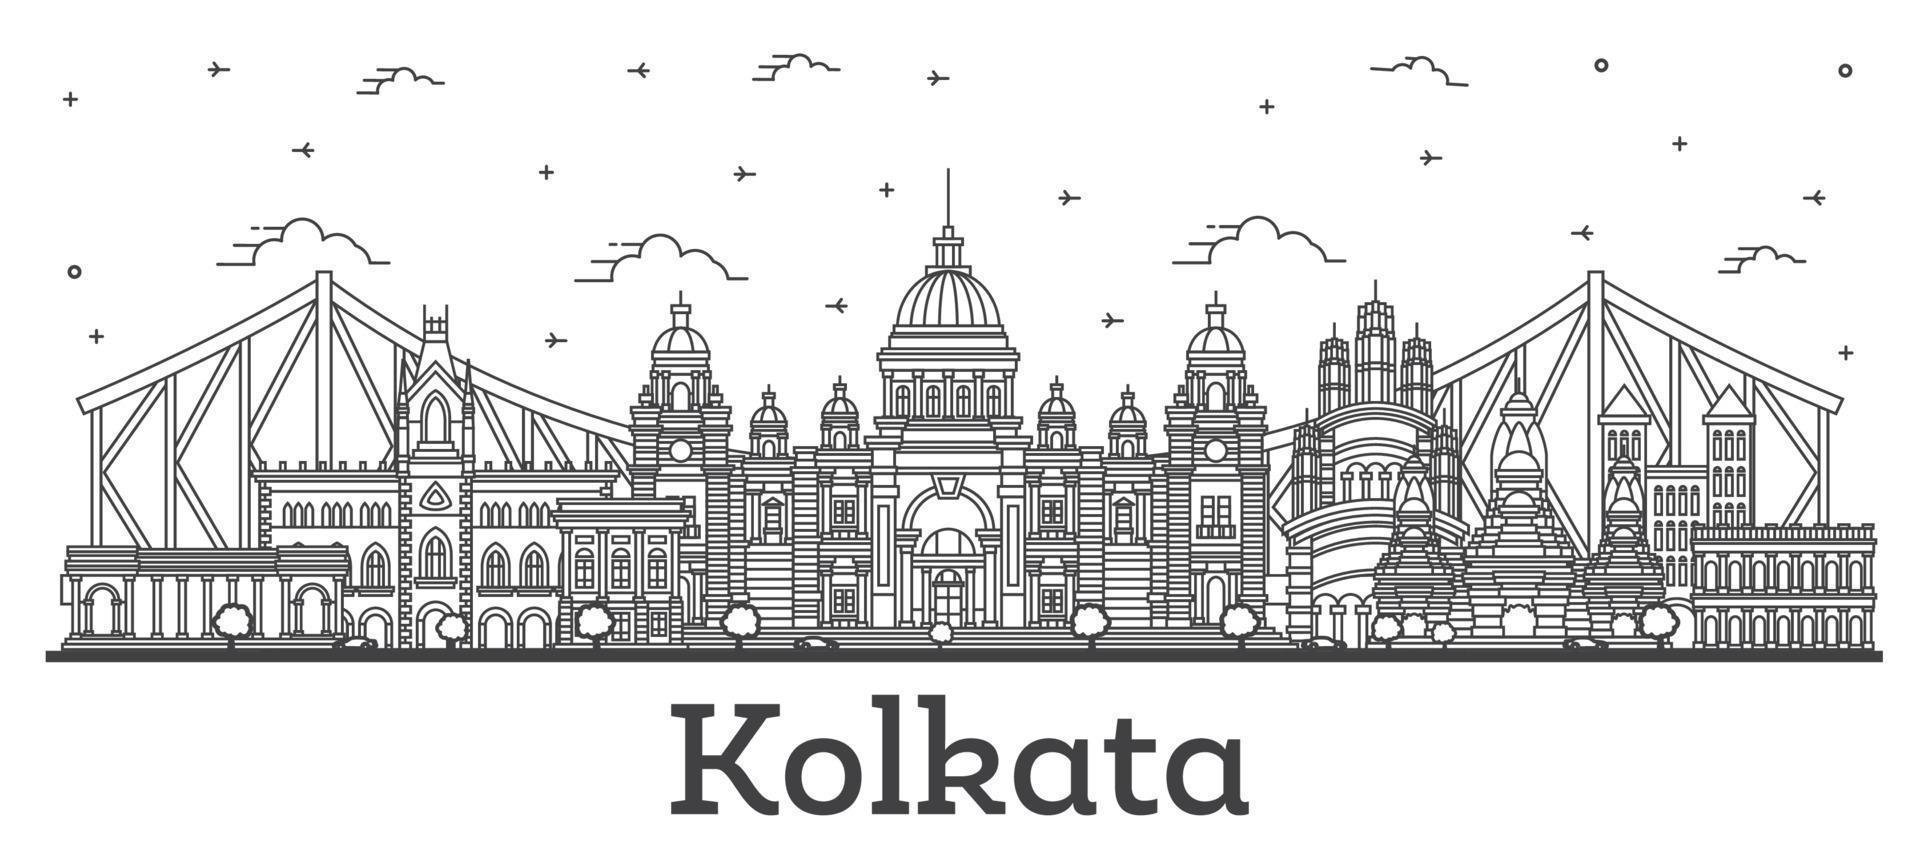 delinear el horizonte de la ciudad de kolkata india con edificios históricos aislados en blanco. vector